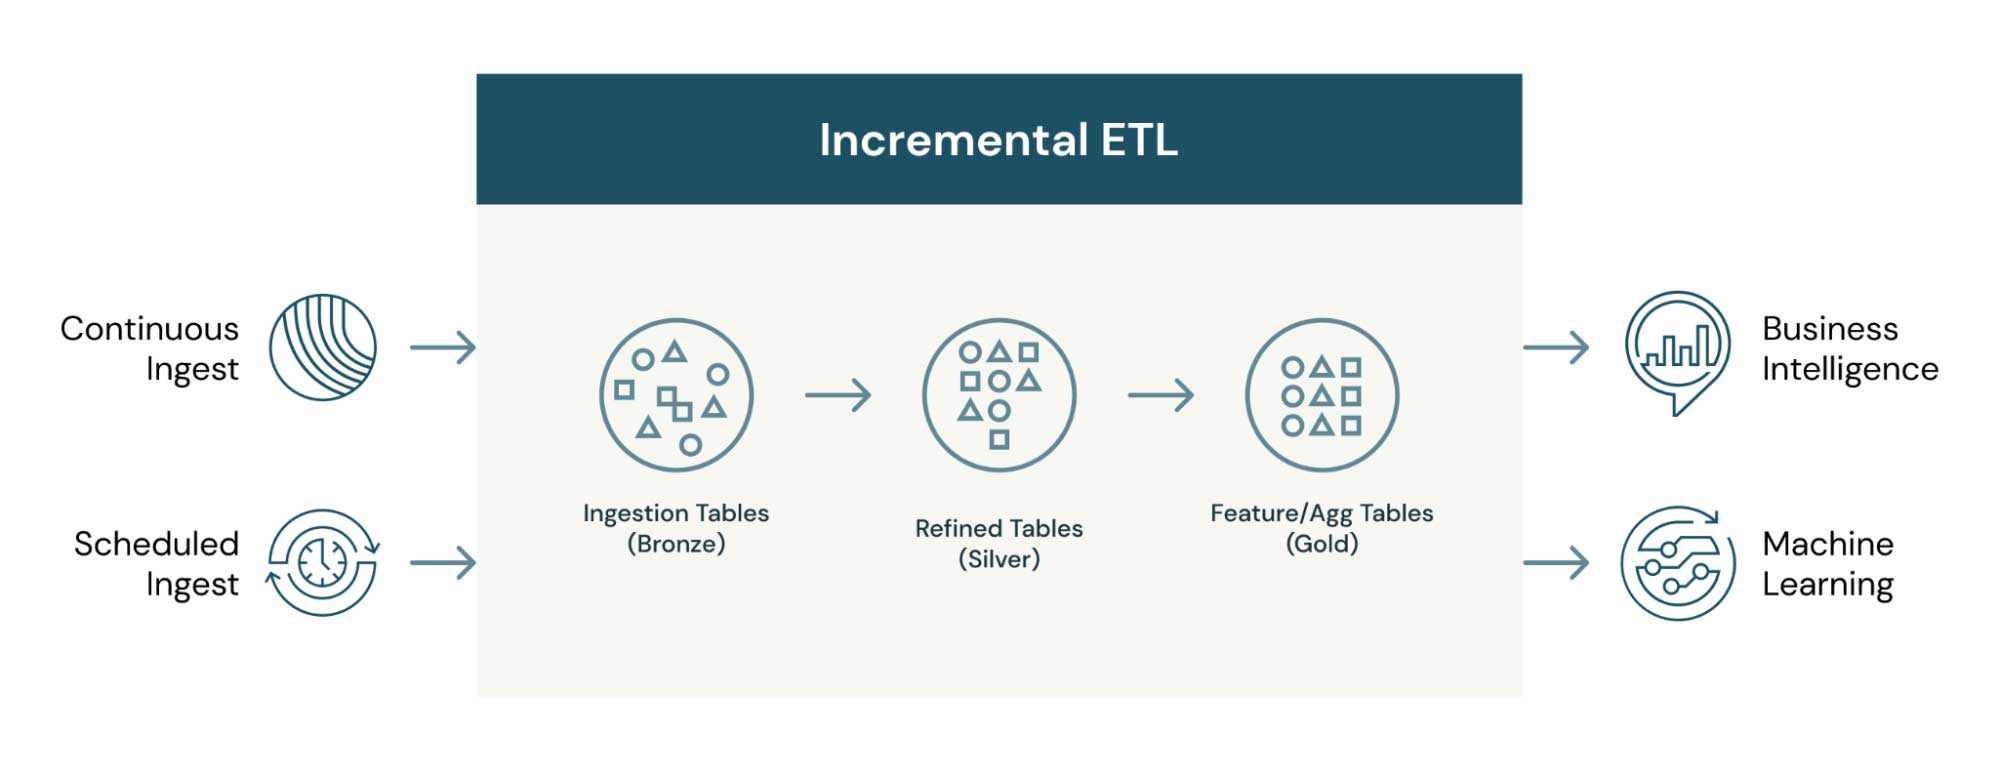 Databricks の増分 ETL プロセスは、メダリオン（ゴールド・シルバー・ブロンズ）テーブルのアーキテクチャを可能かつ効率的にします。あらゆるデータ消費者は、ニーズに合った適切なキュレーションデータセットの利用が可能になります。